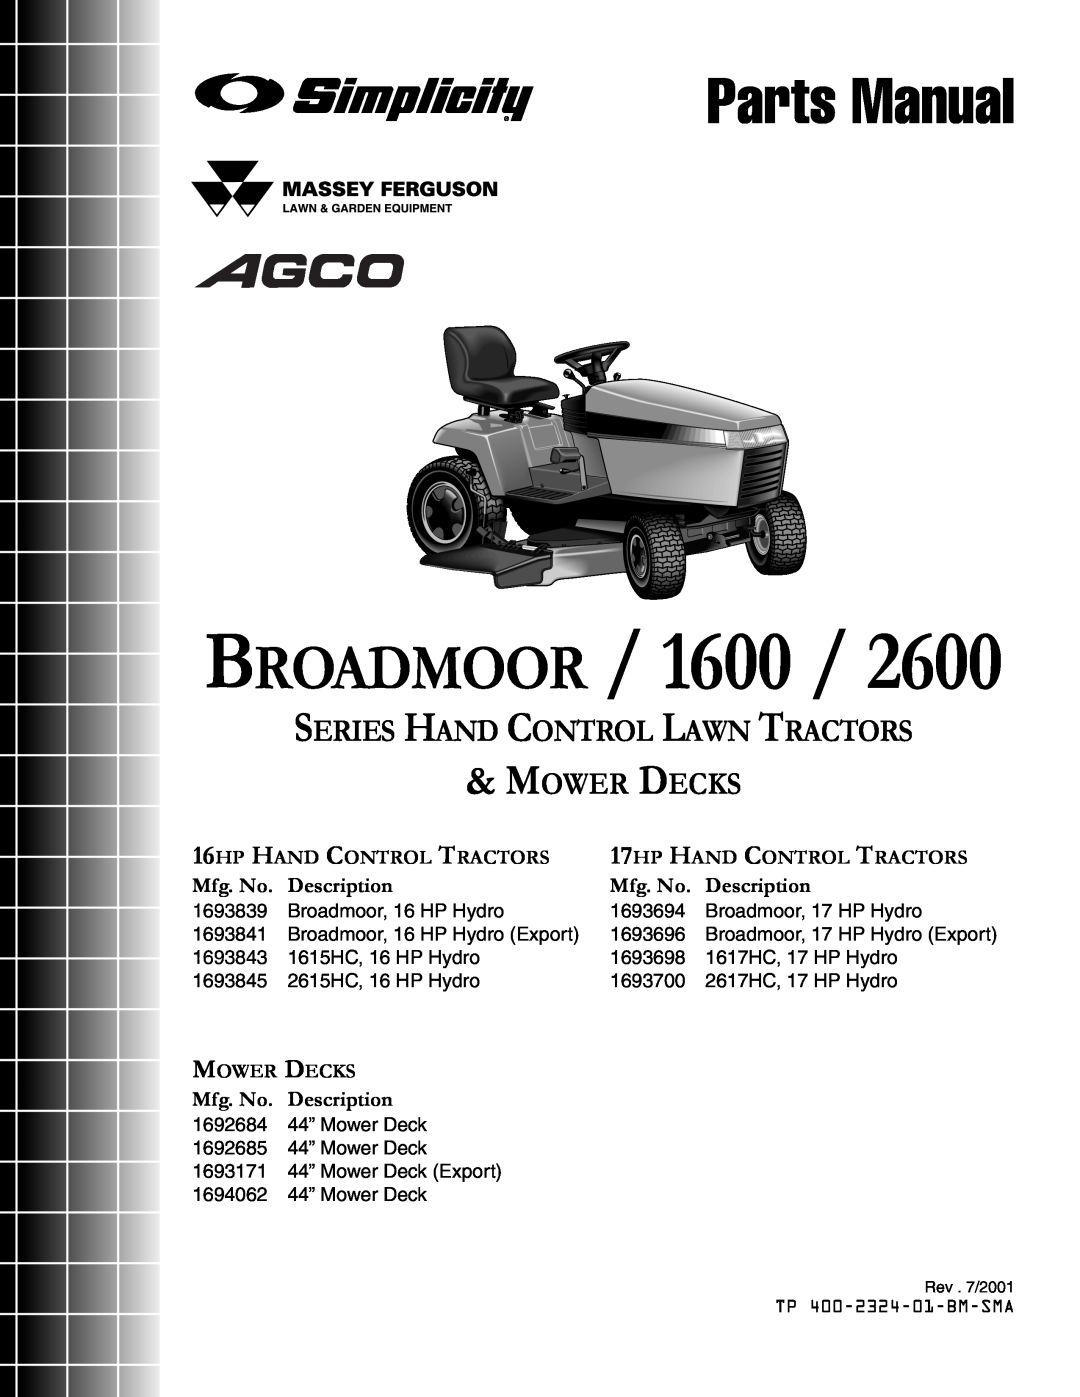 Simplicity 1600, 2600 manual Broadmoor, Parts Manual, Series Hand Control Lawn Tractors Mower Decks, Mfg. No. Description 